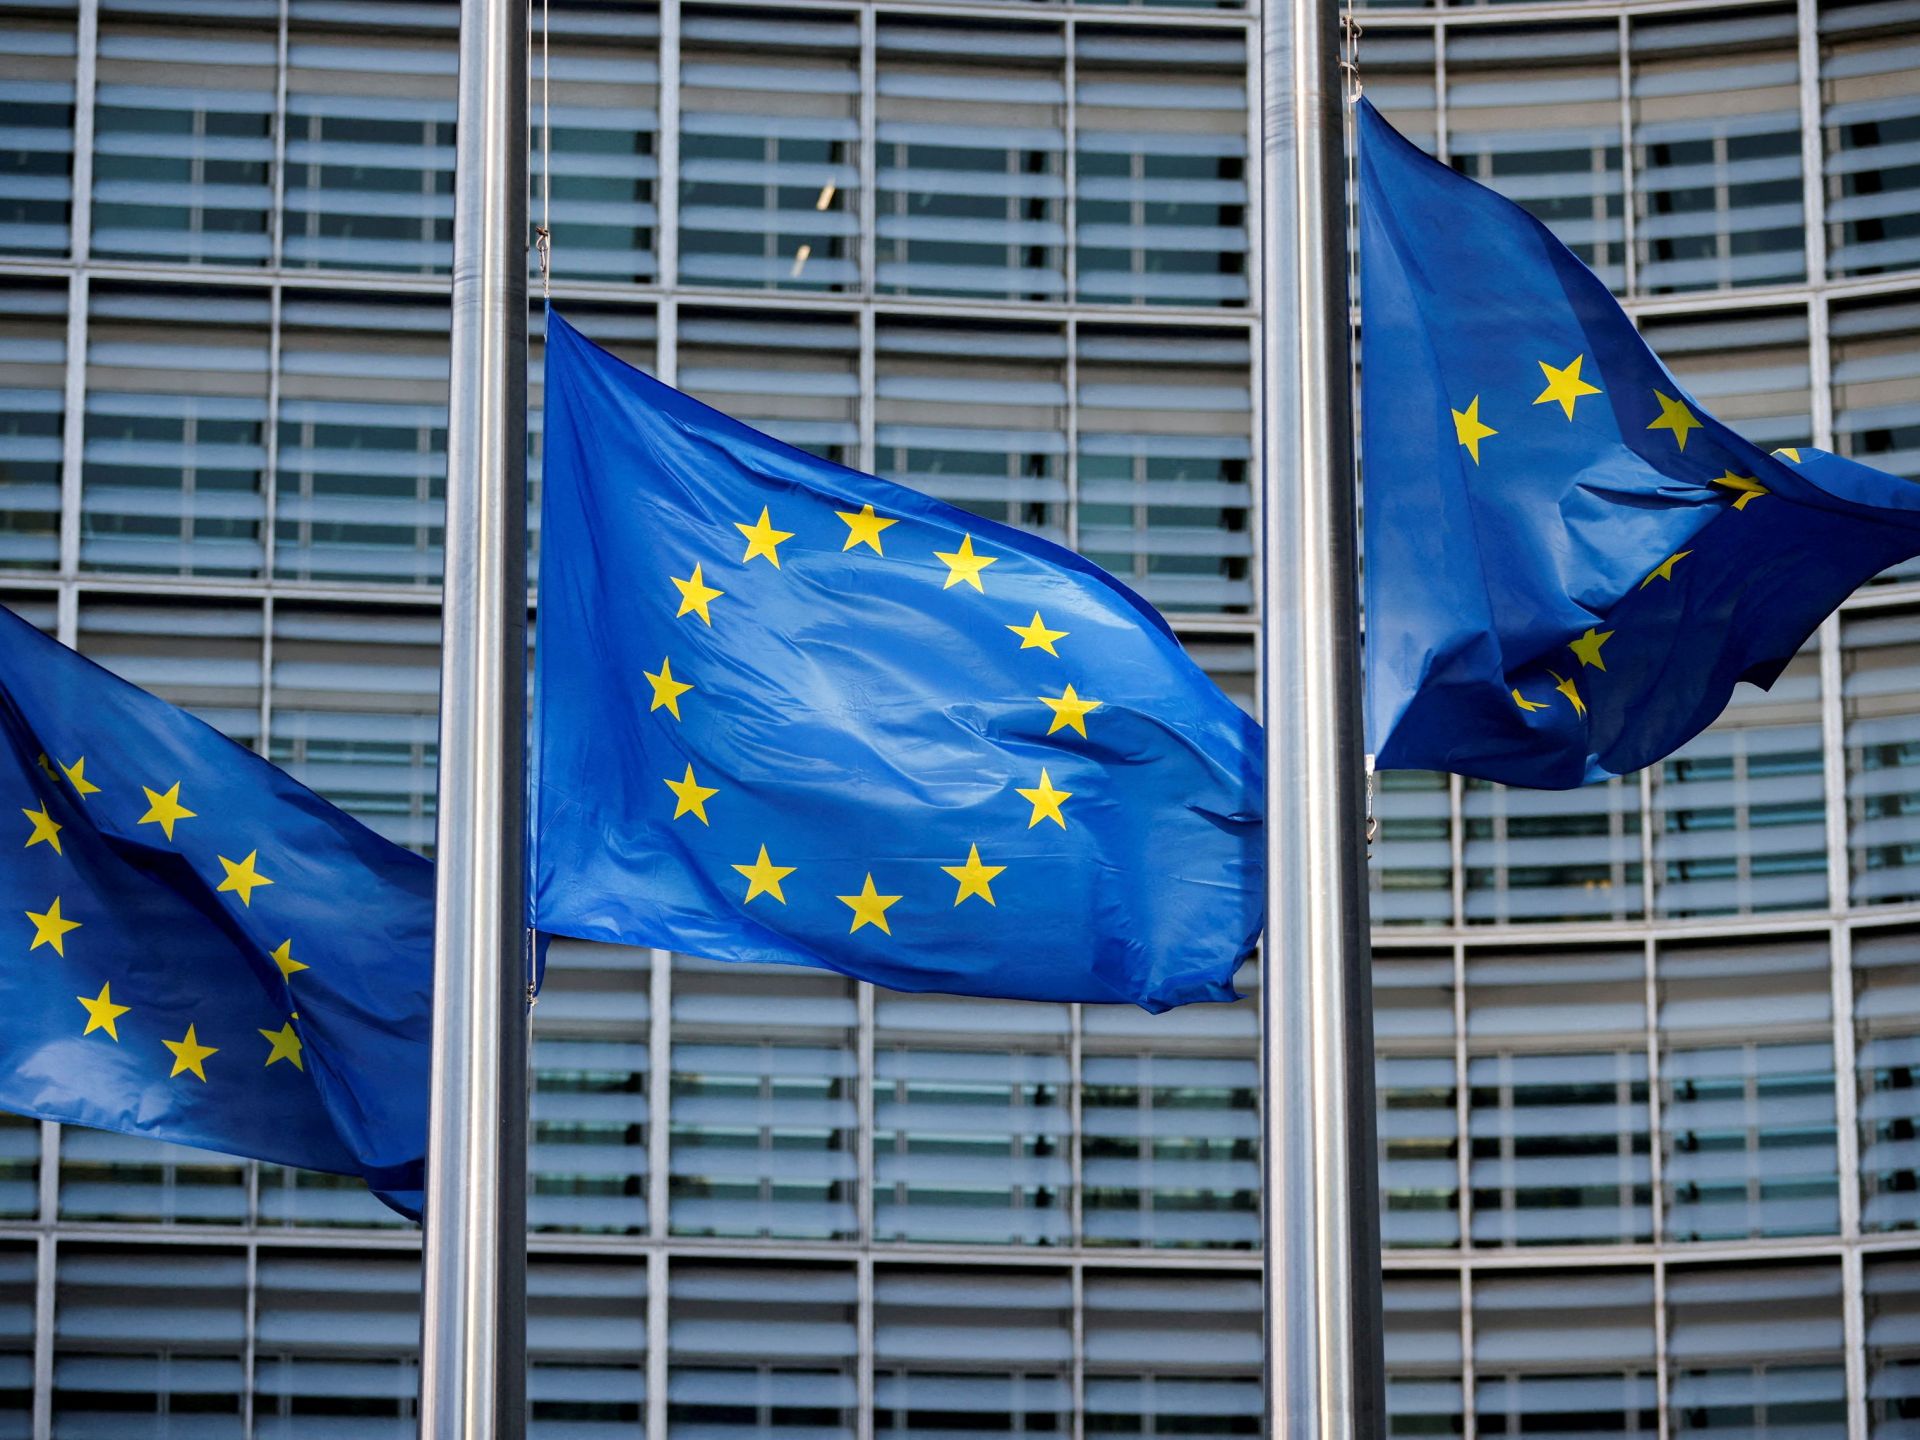 الاتحاد الأوروبي يوافق على بدء محادثات العضوية مع البوسنة والهرسك | أخبار – البوكس نيوز